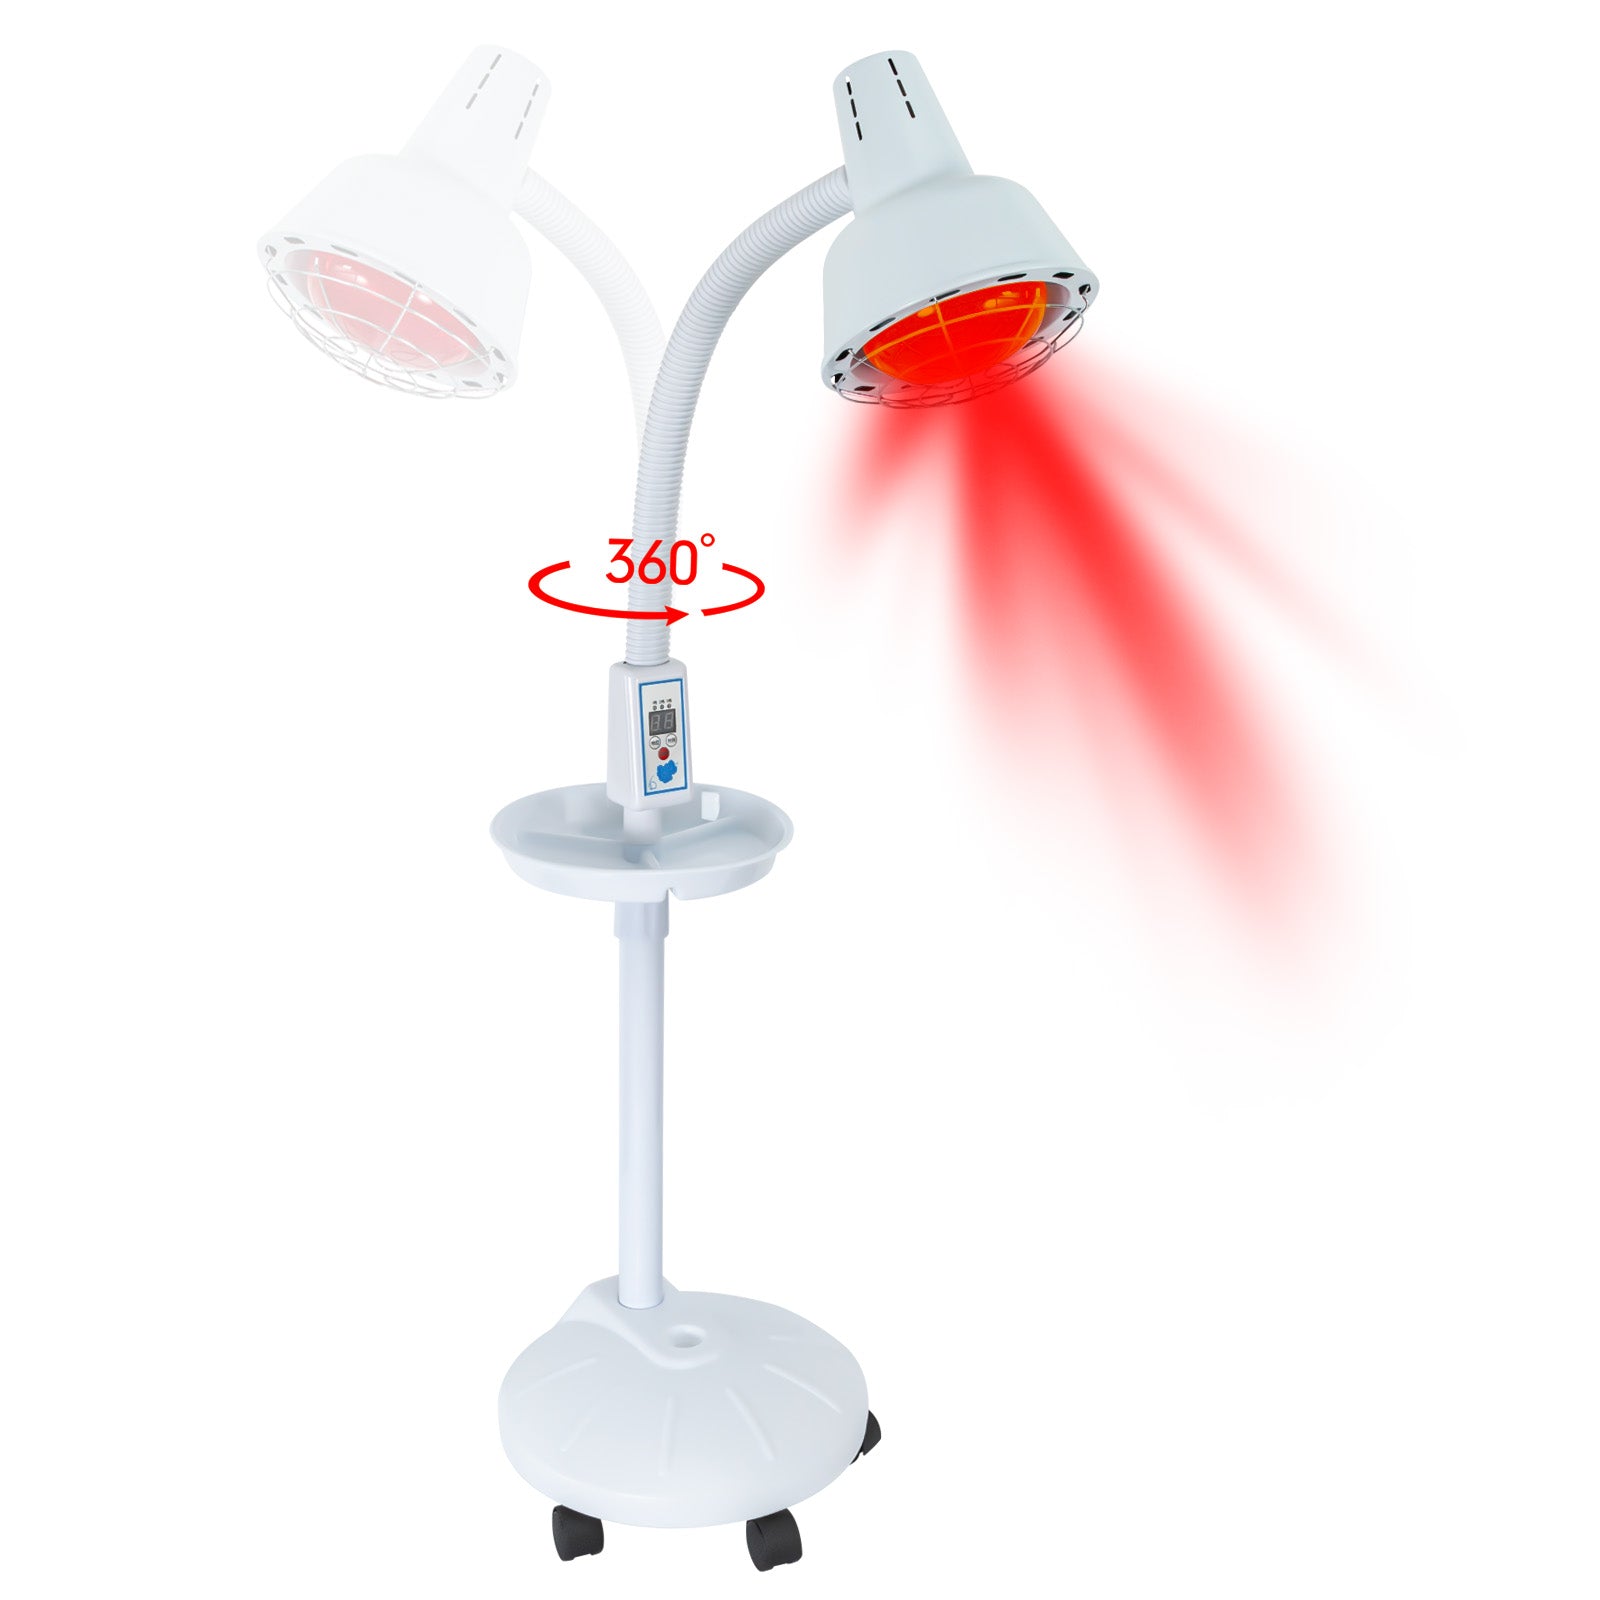 Infrarotlichtständer, 275W Rotlicht-Nahinfrarot-Wärmelampe mit flexiblem Arm und abnehmbarer Steuerung